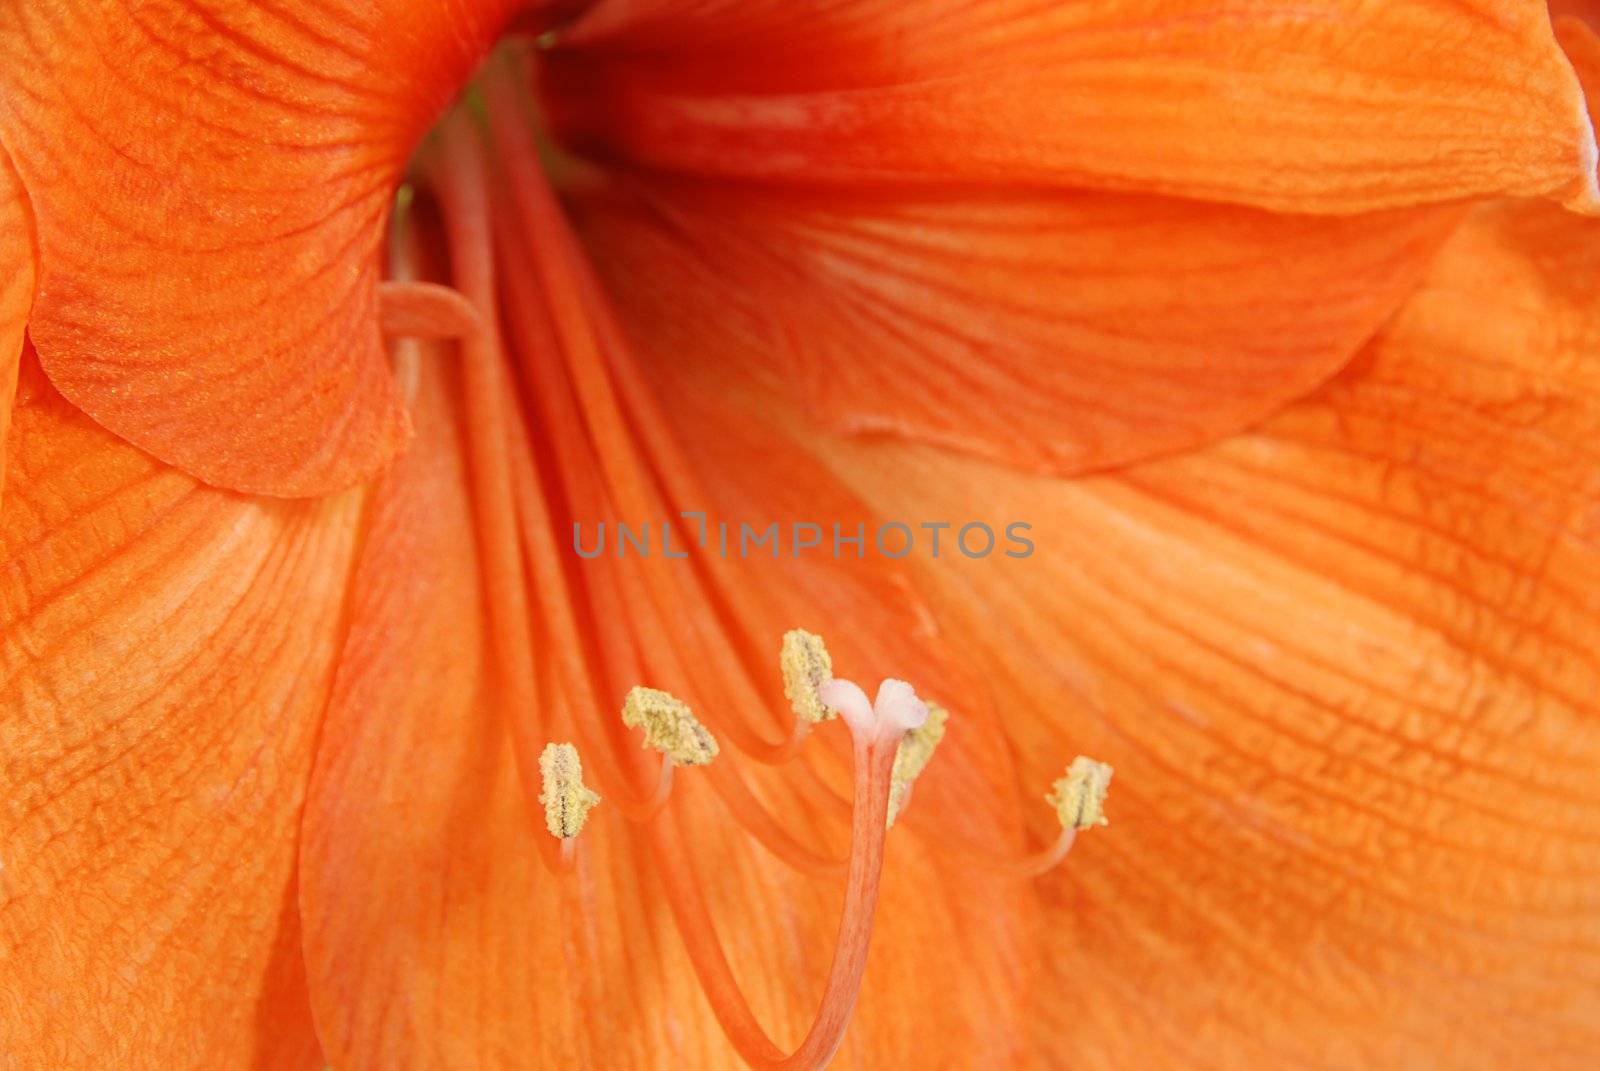 Amaryllis macro - detail of orange flower - shallow depth of field